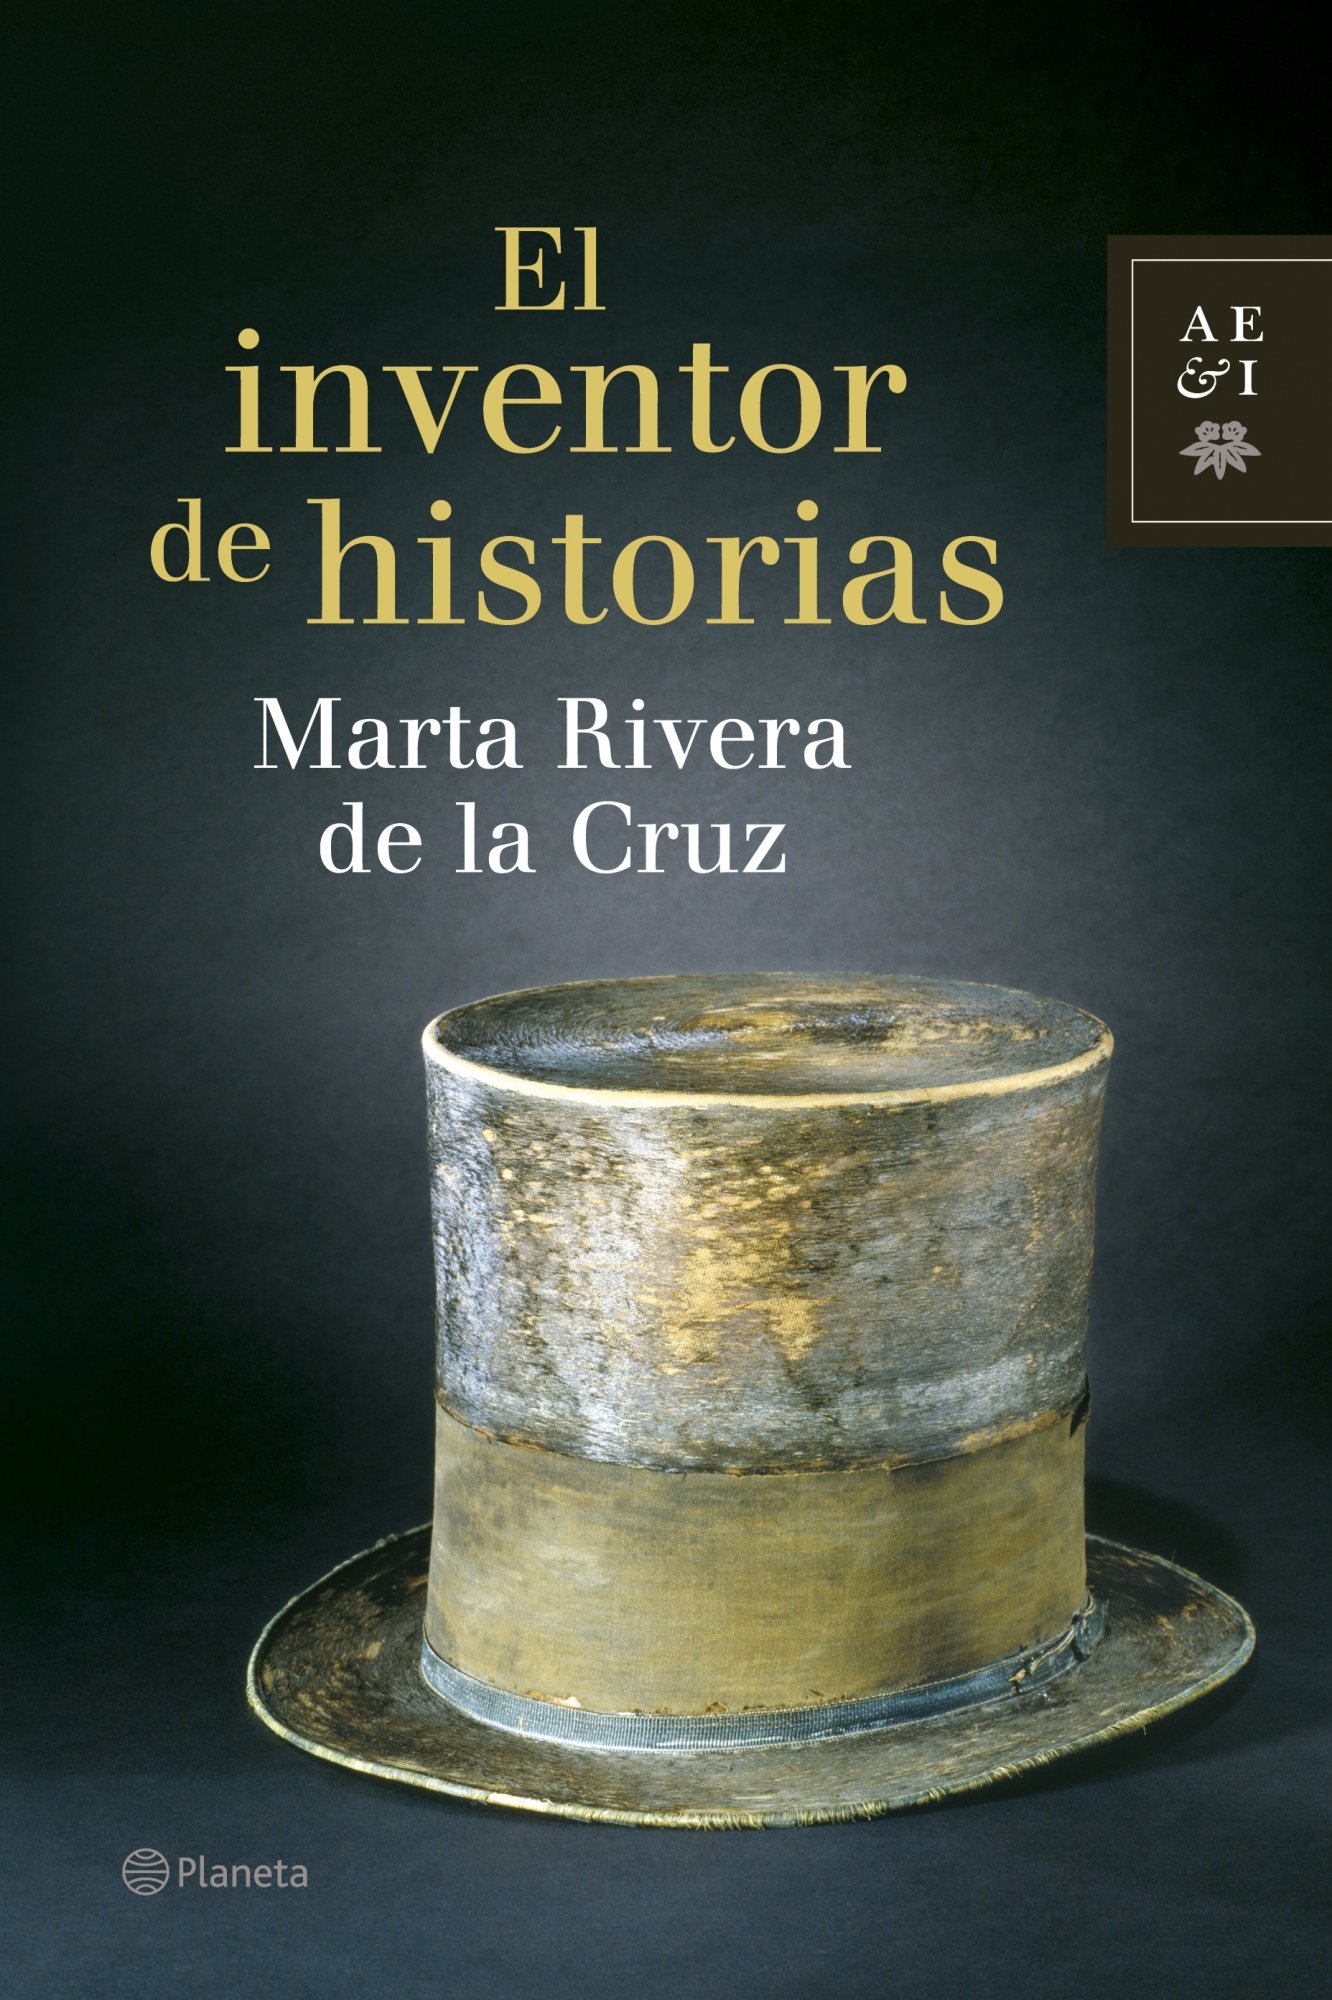 El inventor de historias Marta Rivera de la Cruz